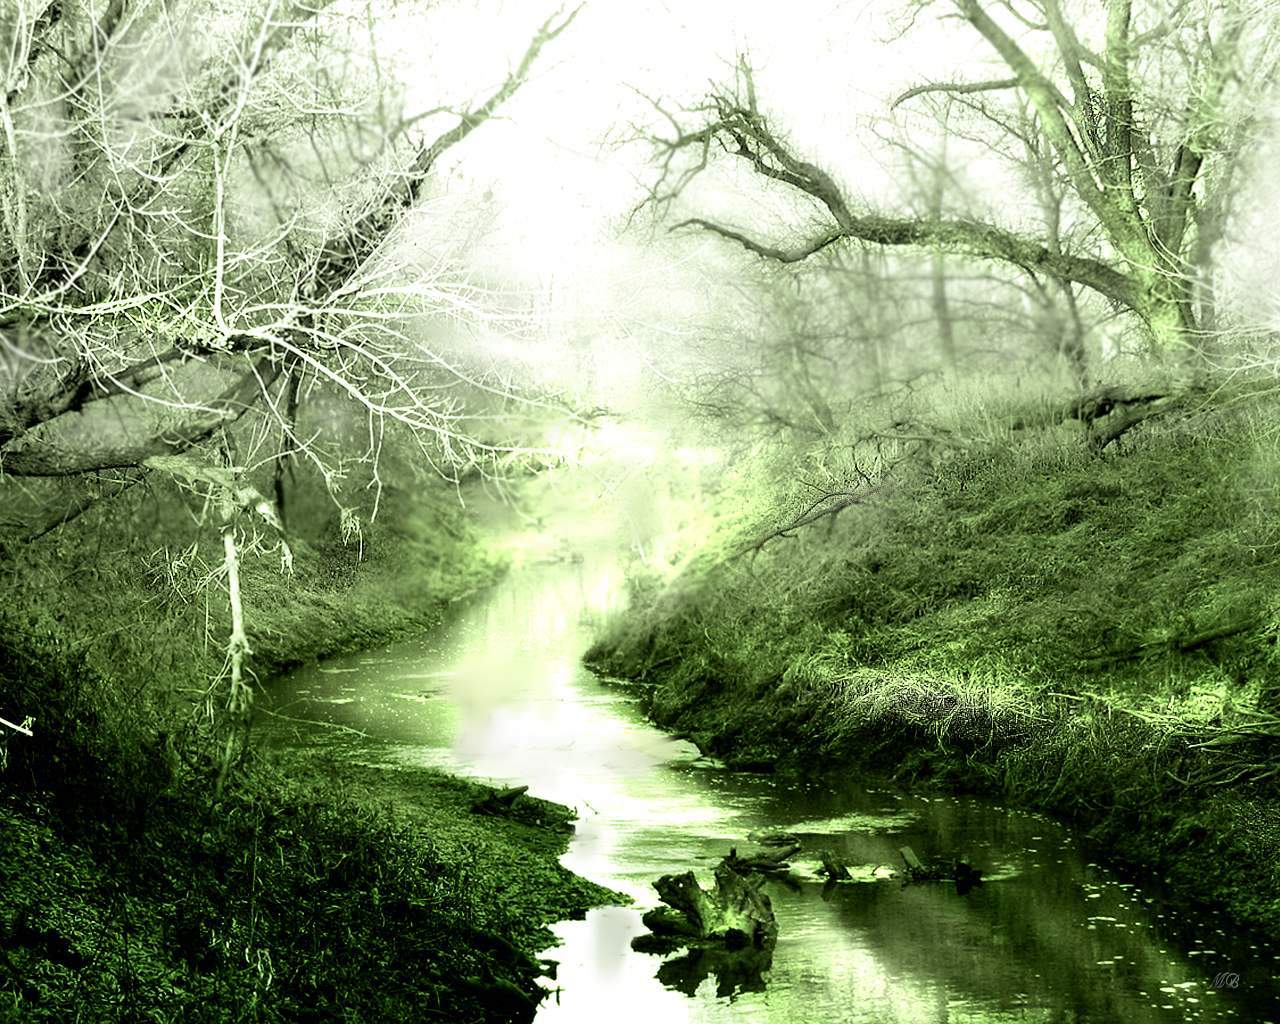 River In Forest HD Wallpaper Desktop Background Image Landscape Jpg